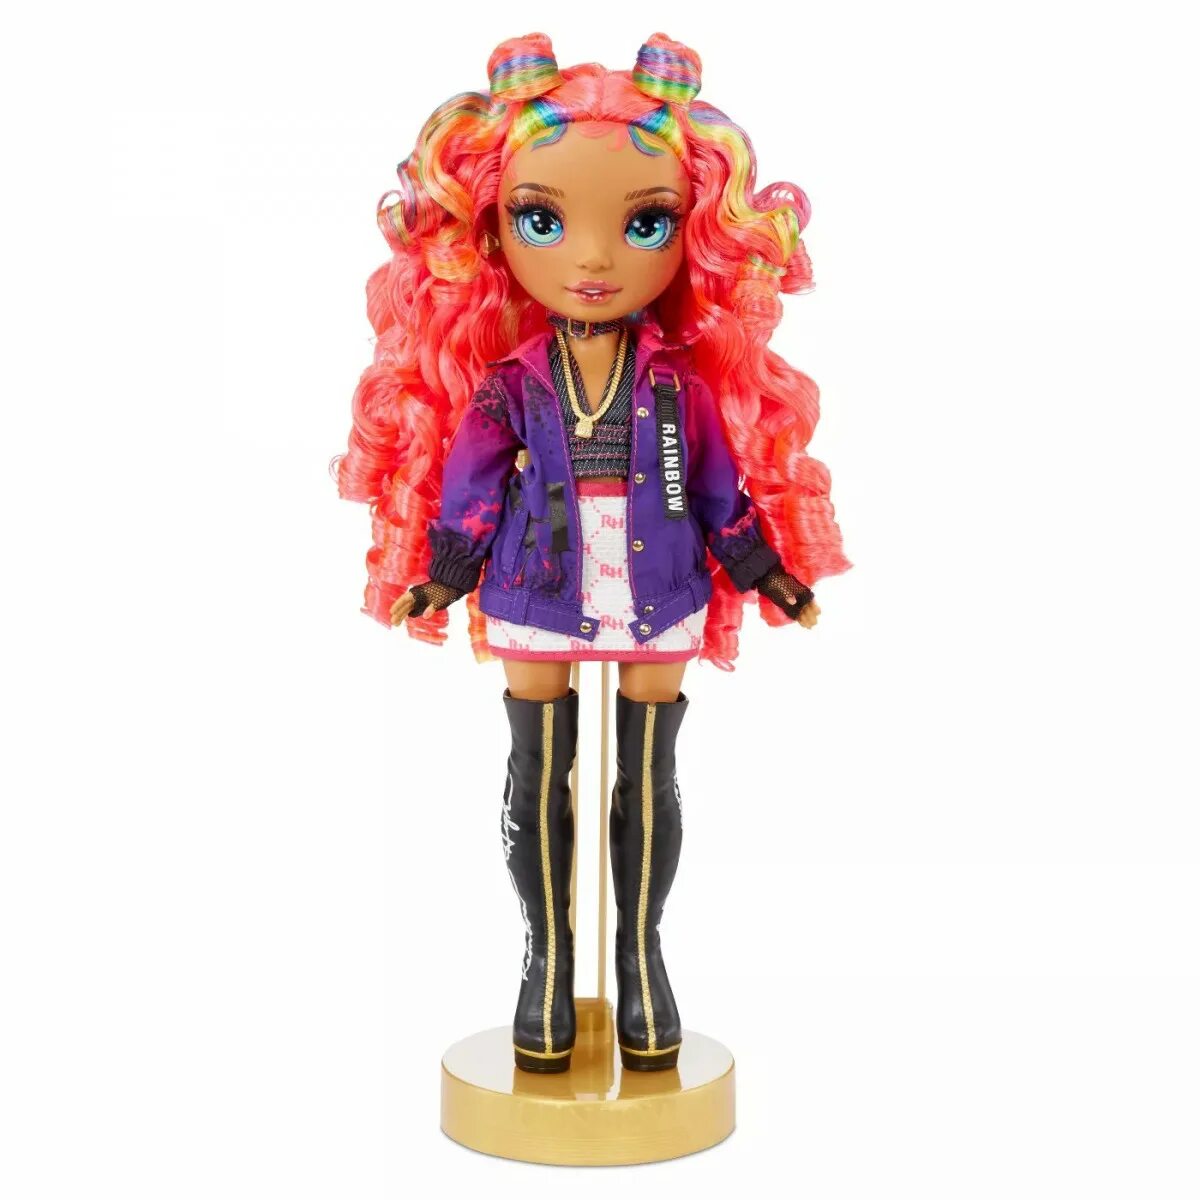 Mga 423331 кукла Rainbow High Fashion Rockstar- Carmen. Rainbow High куклы Rockstar. Кукла Rainbow High rockstars Carmen Major. Коллекция кукол Рейнбоу Хай.